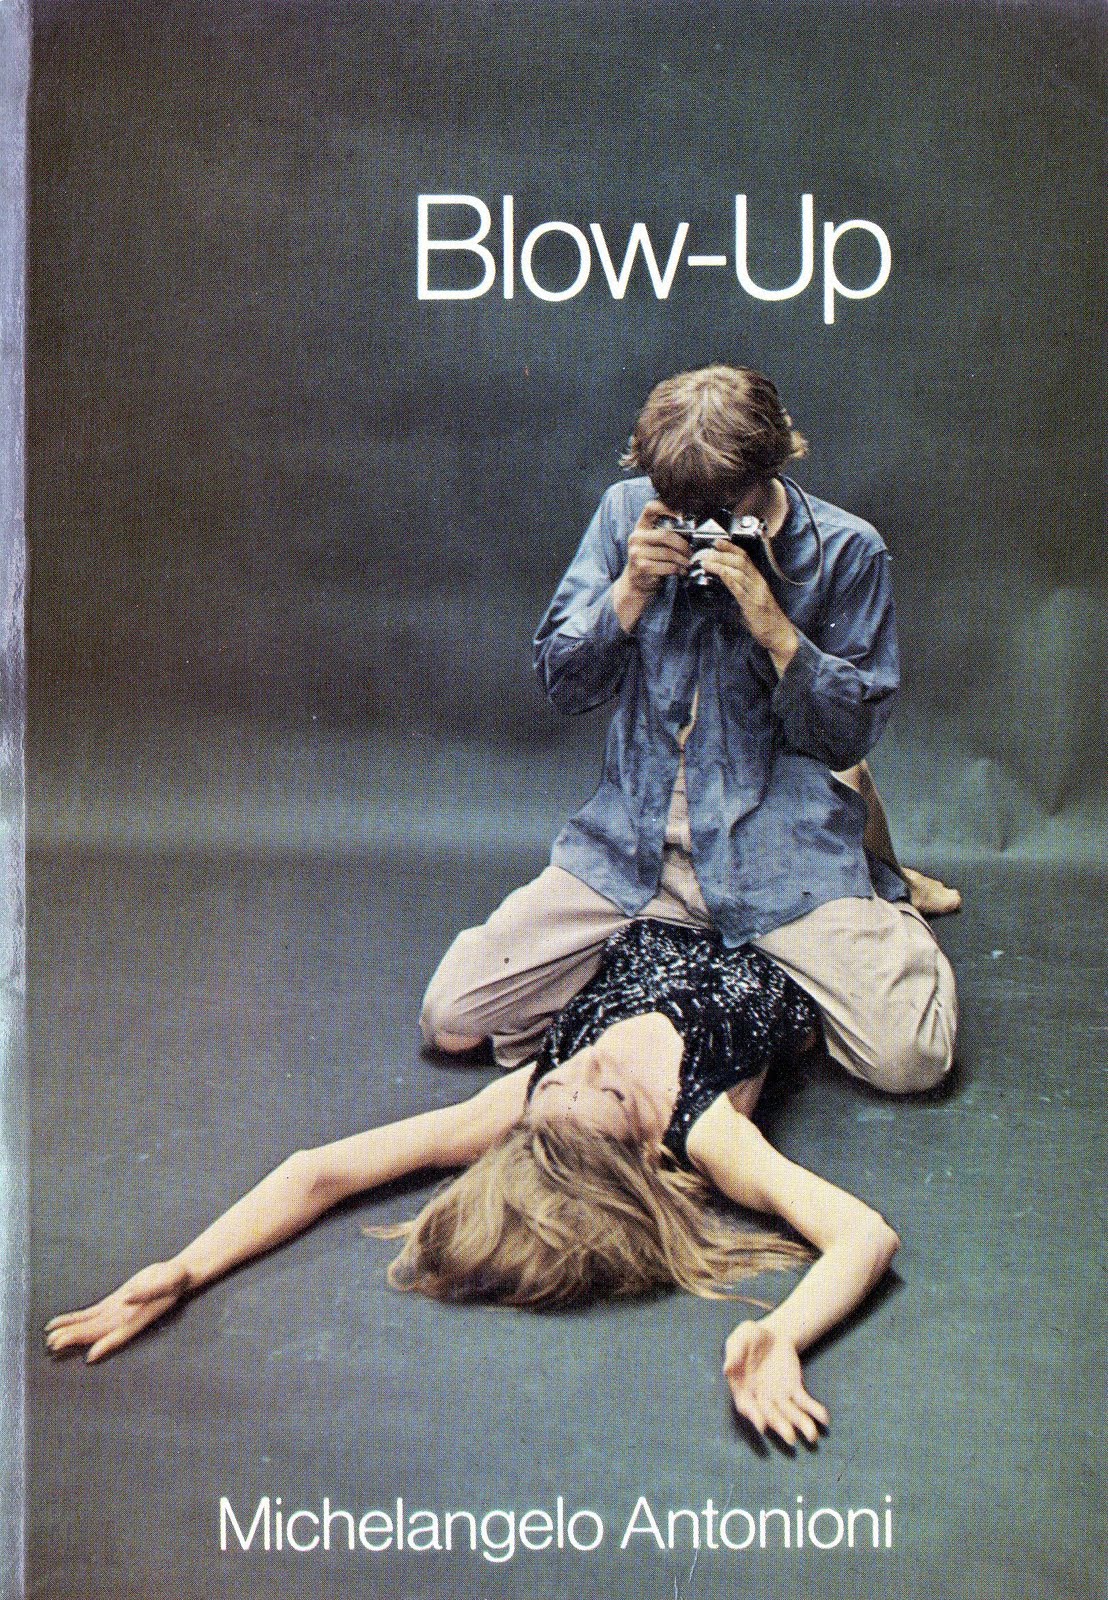 Blow up movie. Микеланджело Антониони Фотоувеличение. Фотоувеличение (1966) blow-up. Blow up Michelangelo Antonioni 1966. Blow up Антониони.